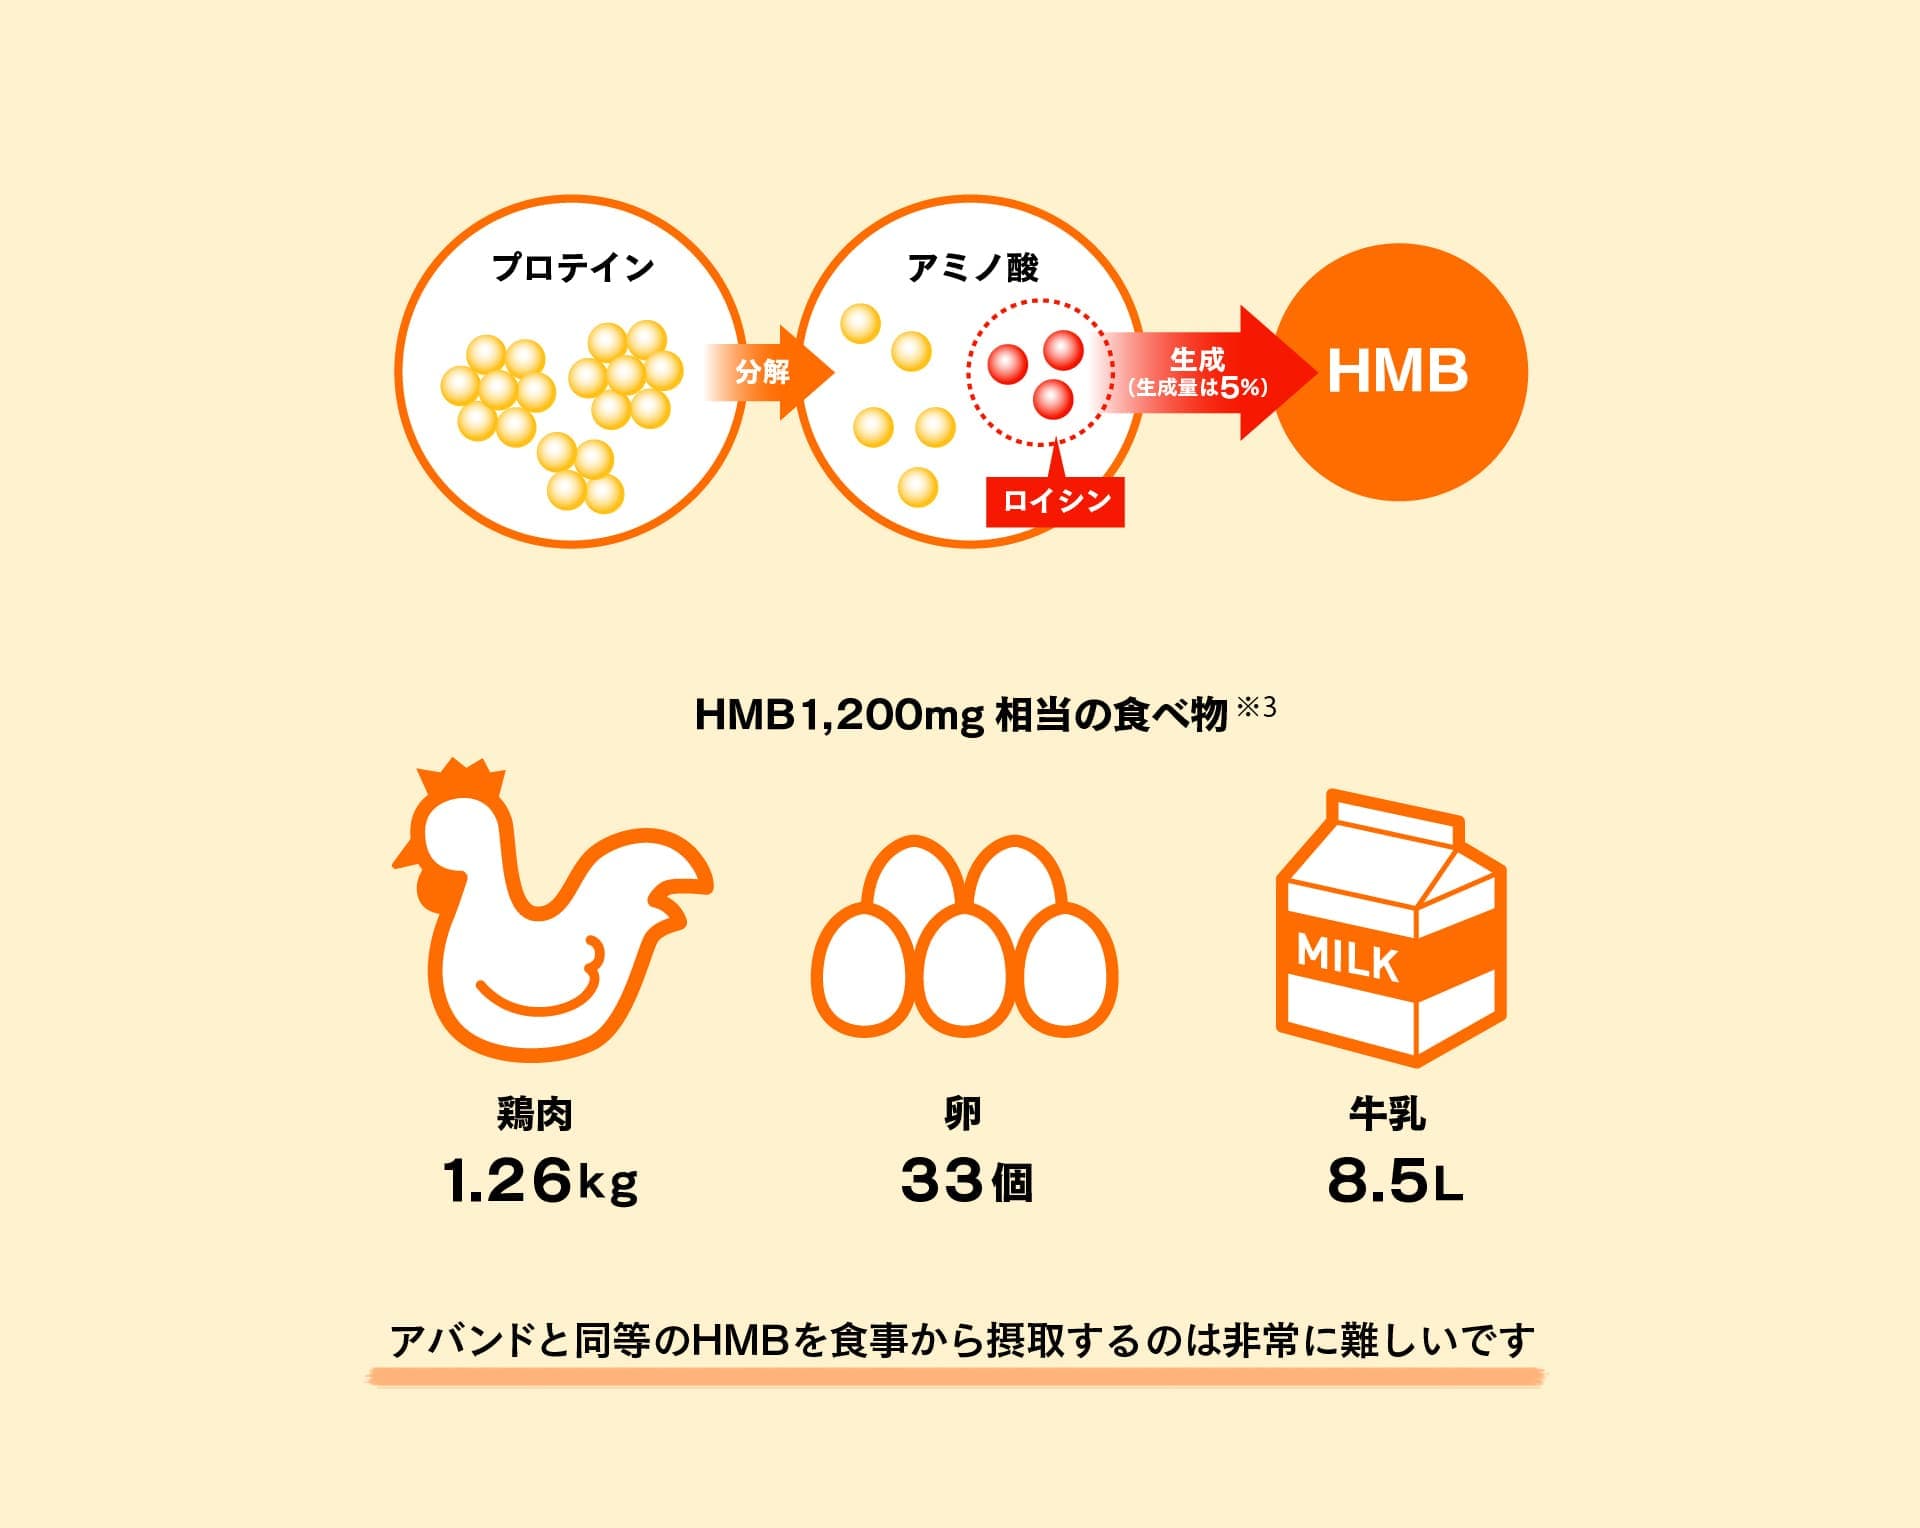 HMB1,200mg相当の食べ物 鶏肉1.26kg 卵33個 牛乳8.5L